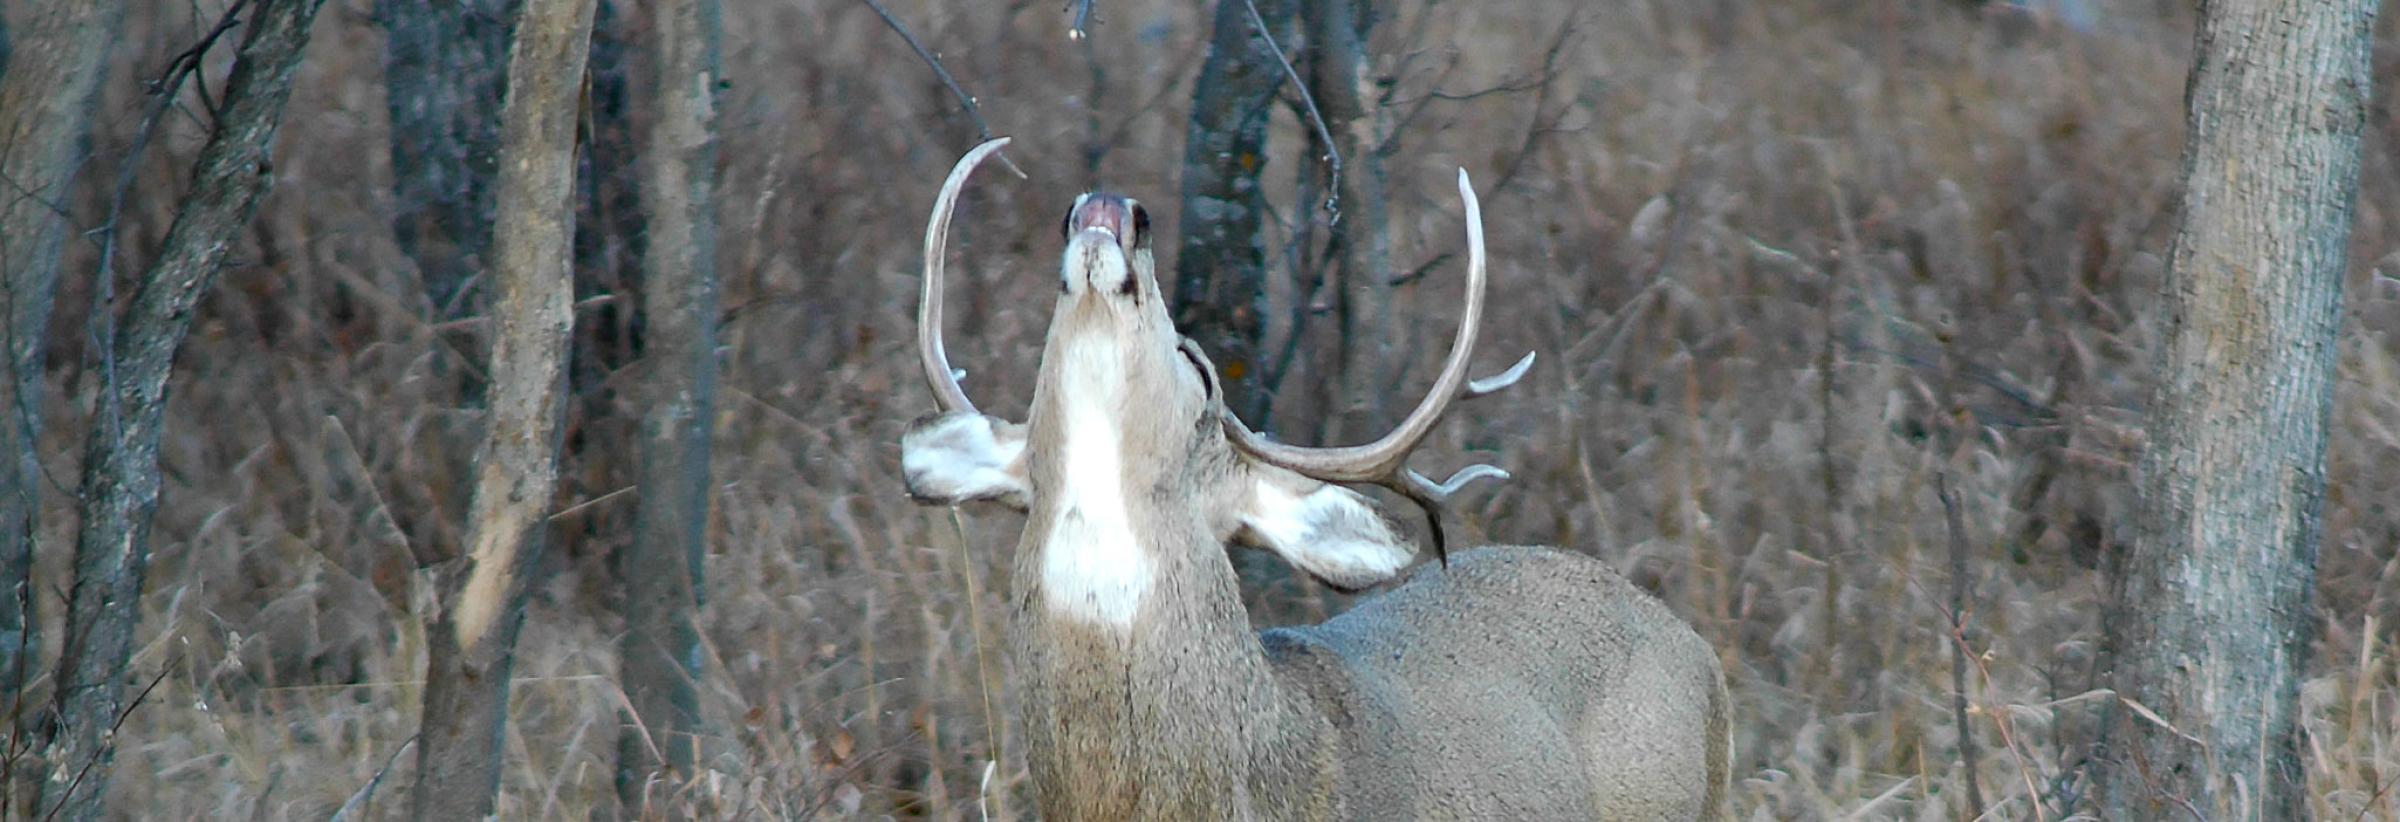 Mule deer buck senting for does